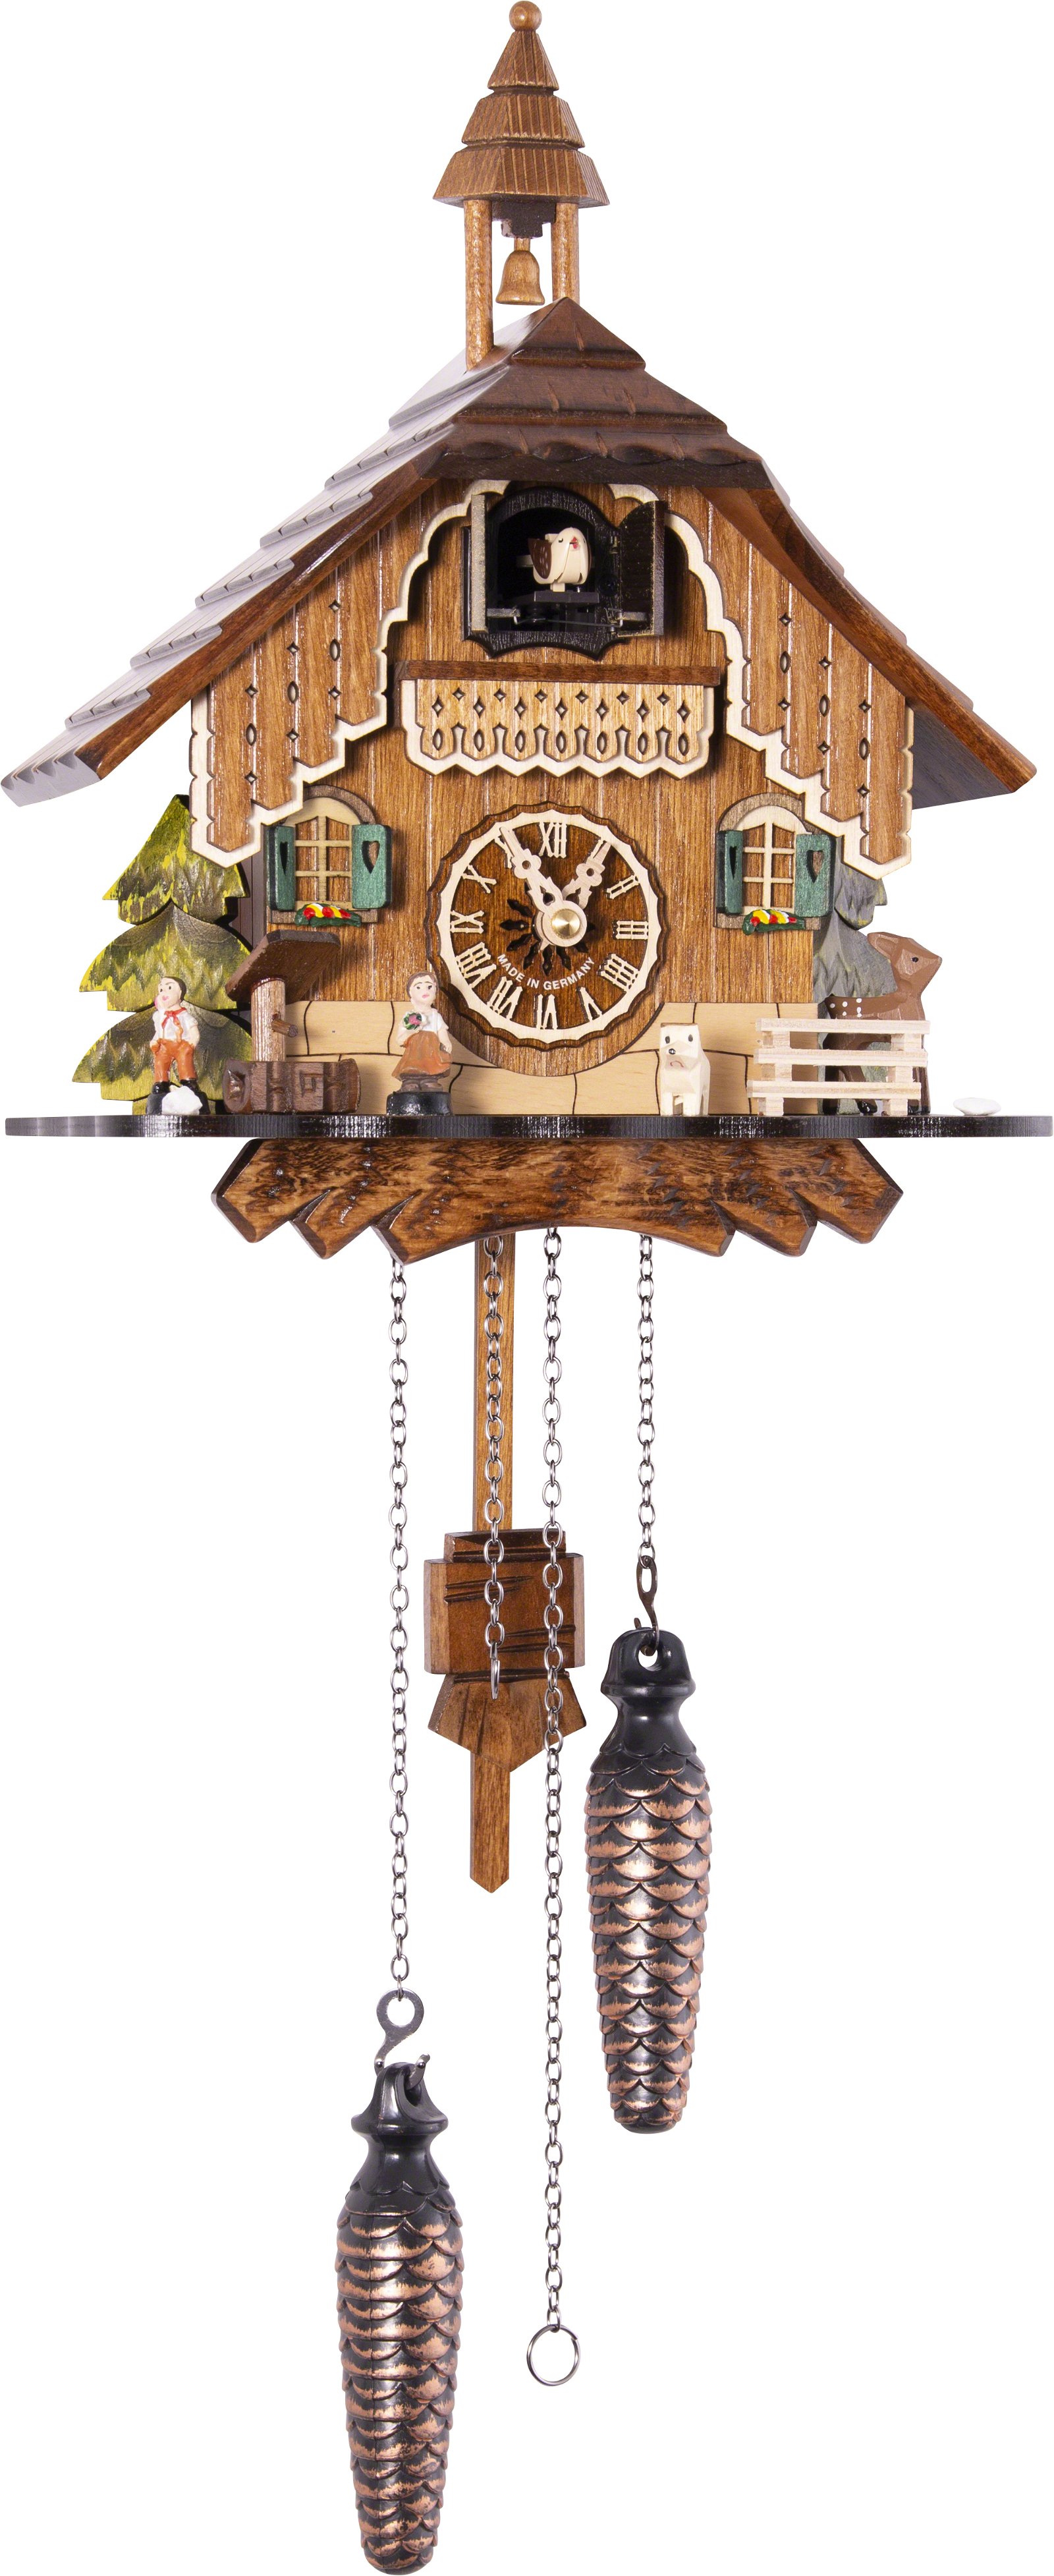 Kuckucksuhr Quarz-Uhrwerk Chalet-Stil 29cm von Engstler